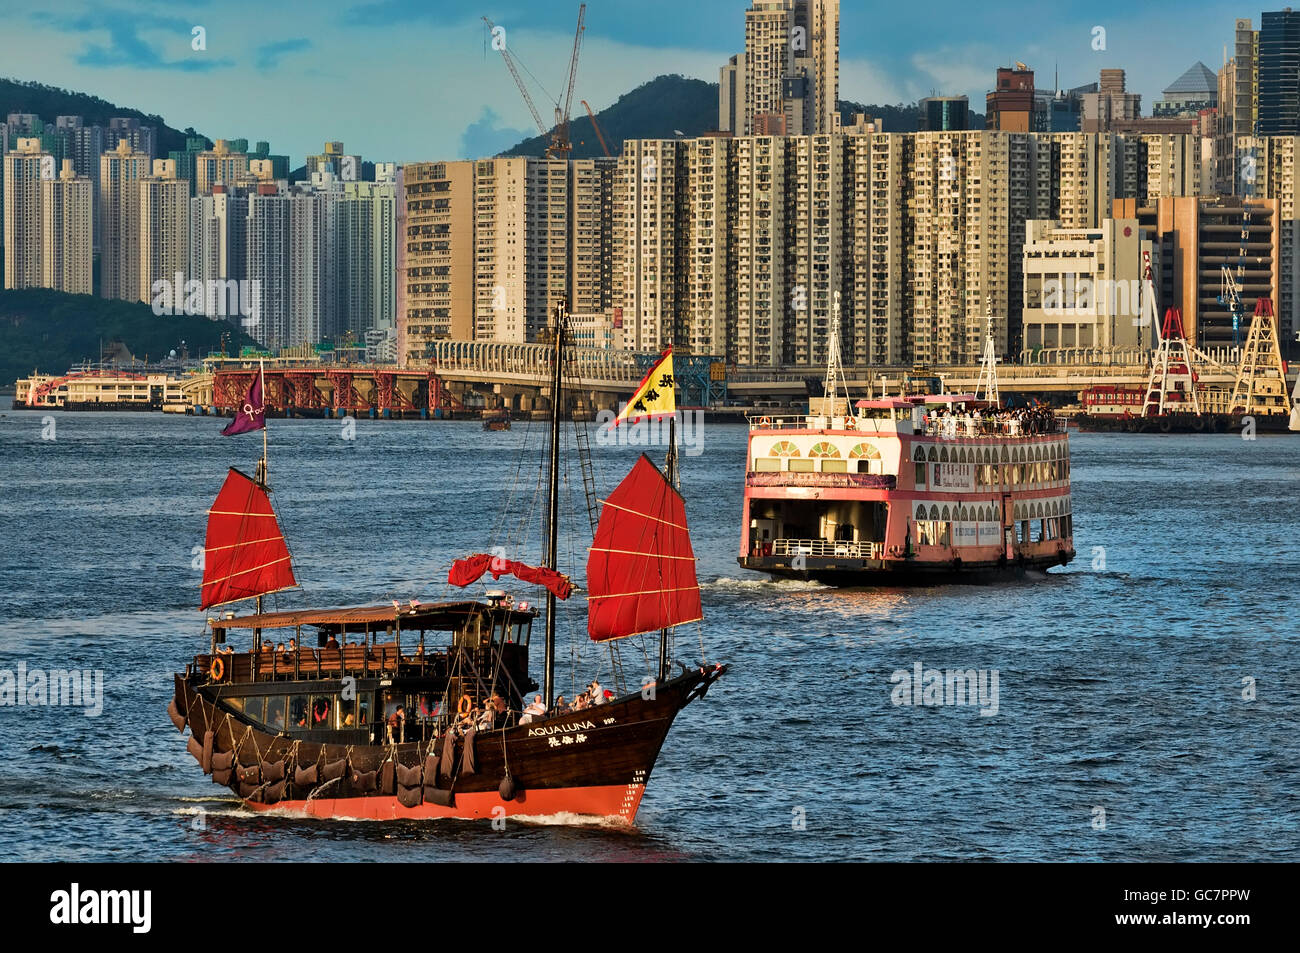 Les célèbres jonques touristiques traditionnels, le port de Victoria, Hong Kong, Chine. Banque D'Images